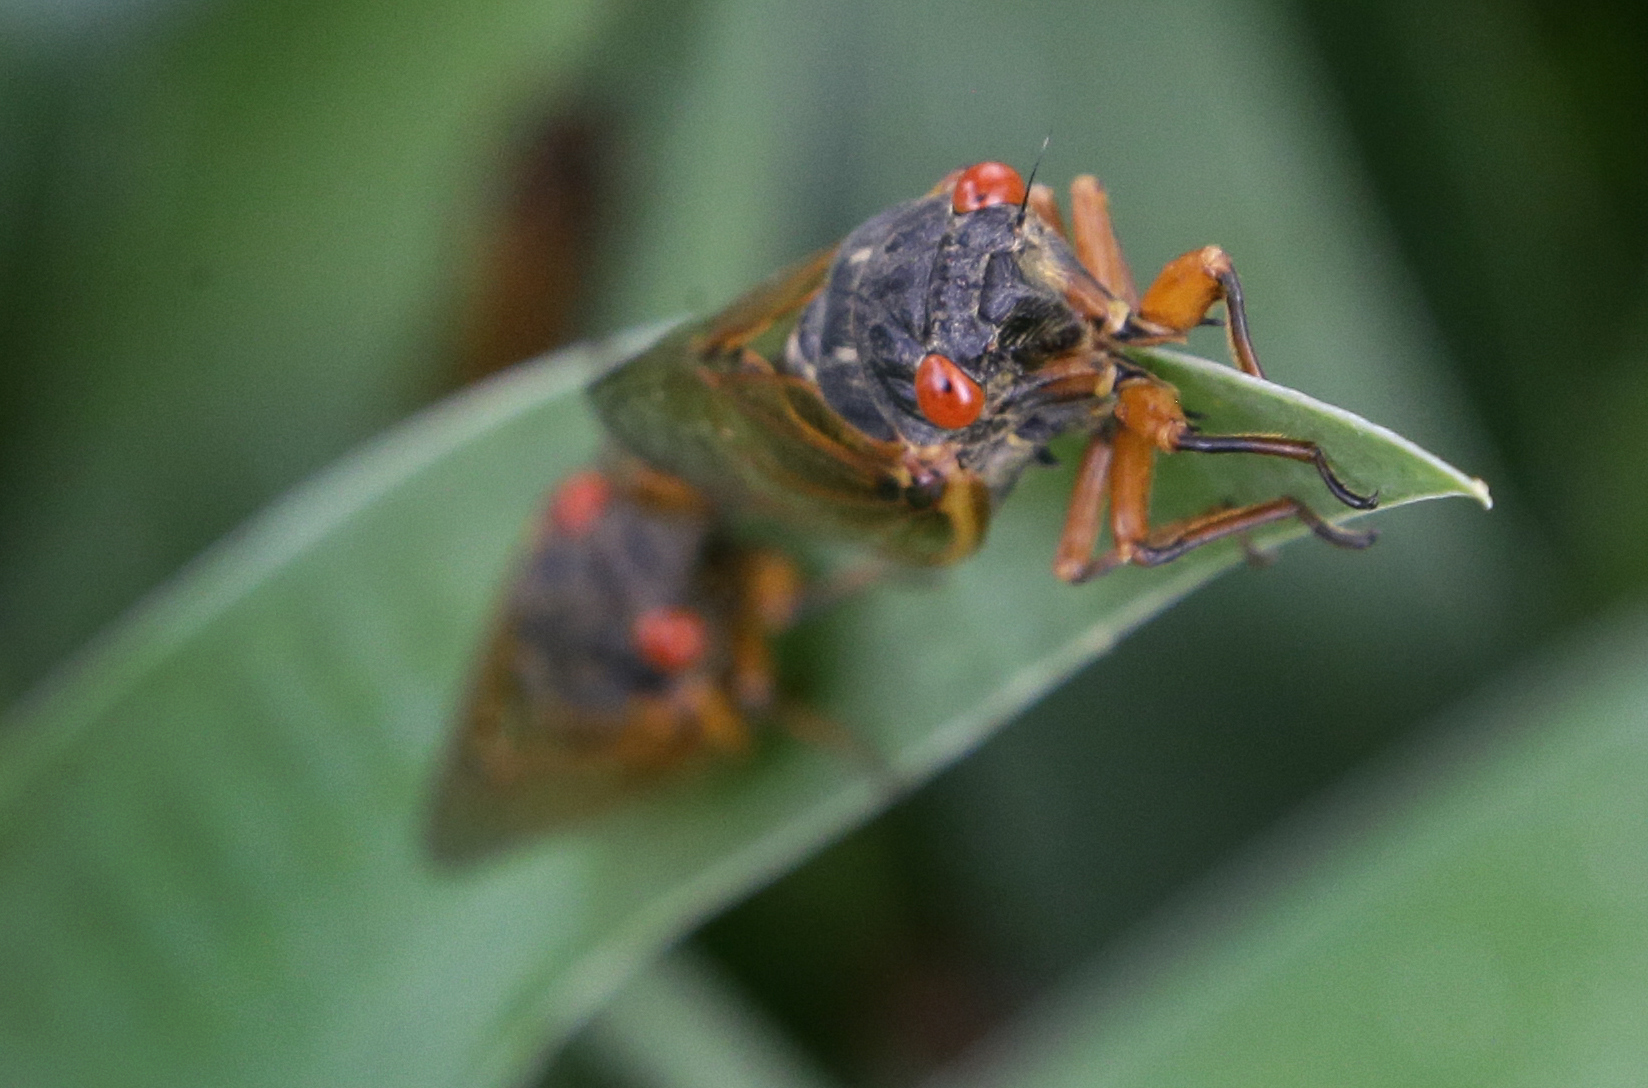 A periodical cicada lands on an Iris leaf.